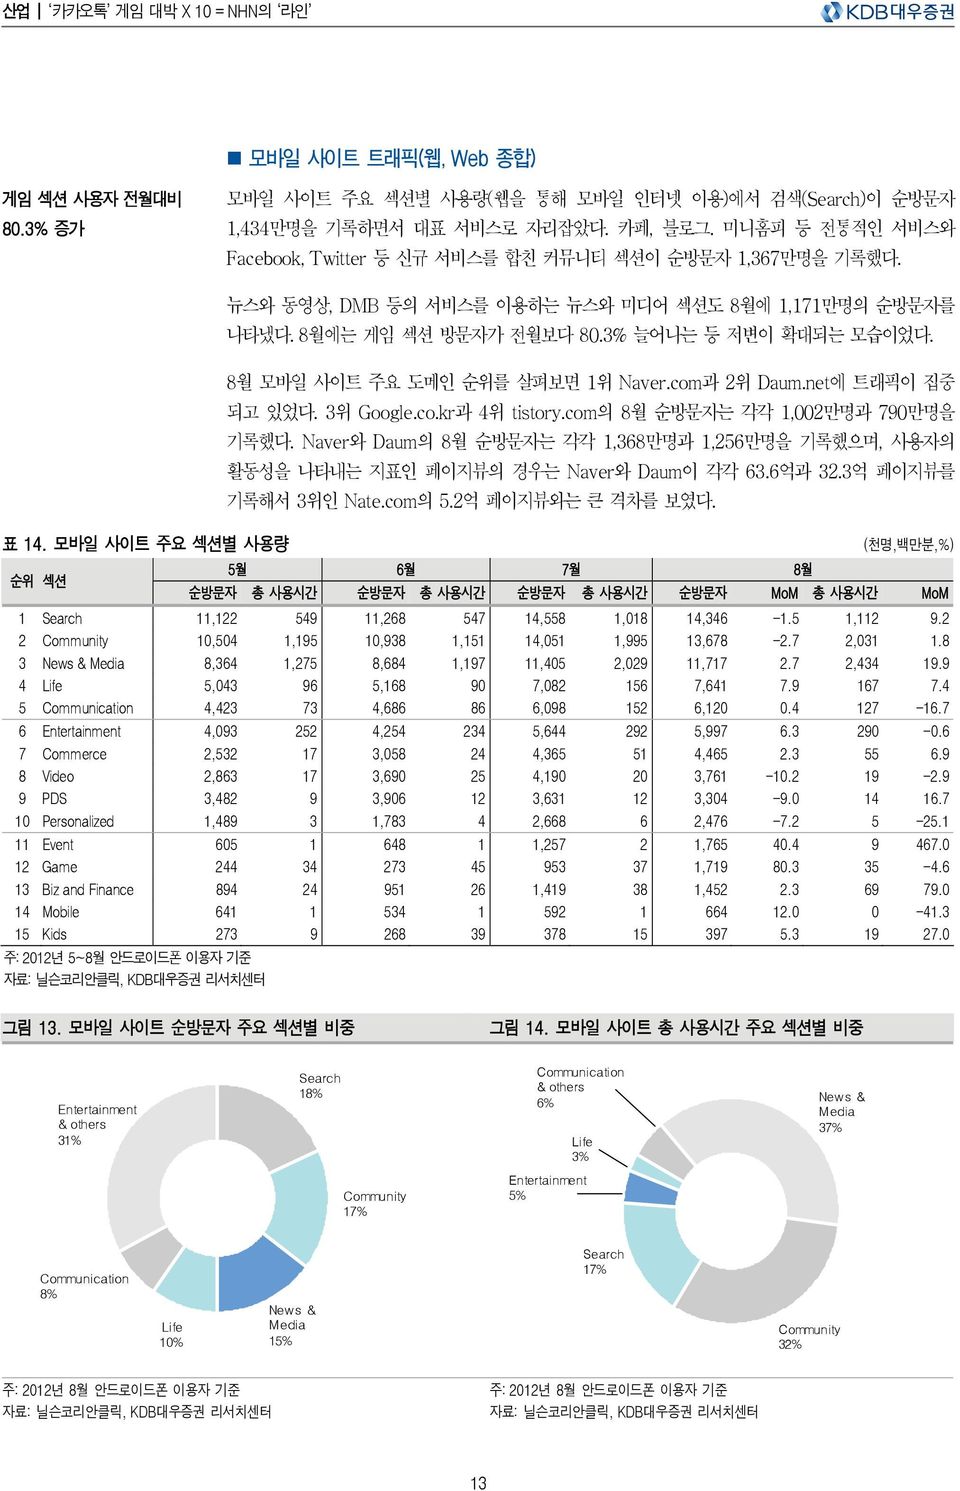 8월 모바일 사이트 주요 도메인 순위를 살펴보면 1위 Naver.com과 2위 Daum.net에 트래픽이 집중 되고 있었다. 3위 Google.co.kr과 4위 tistory.com의 8월 순방문자는 각각 1,2만명과 79만명을 기록했다.